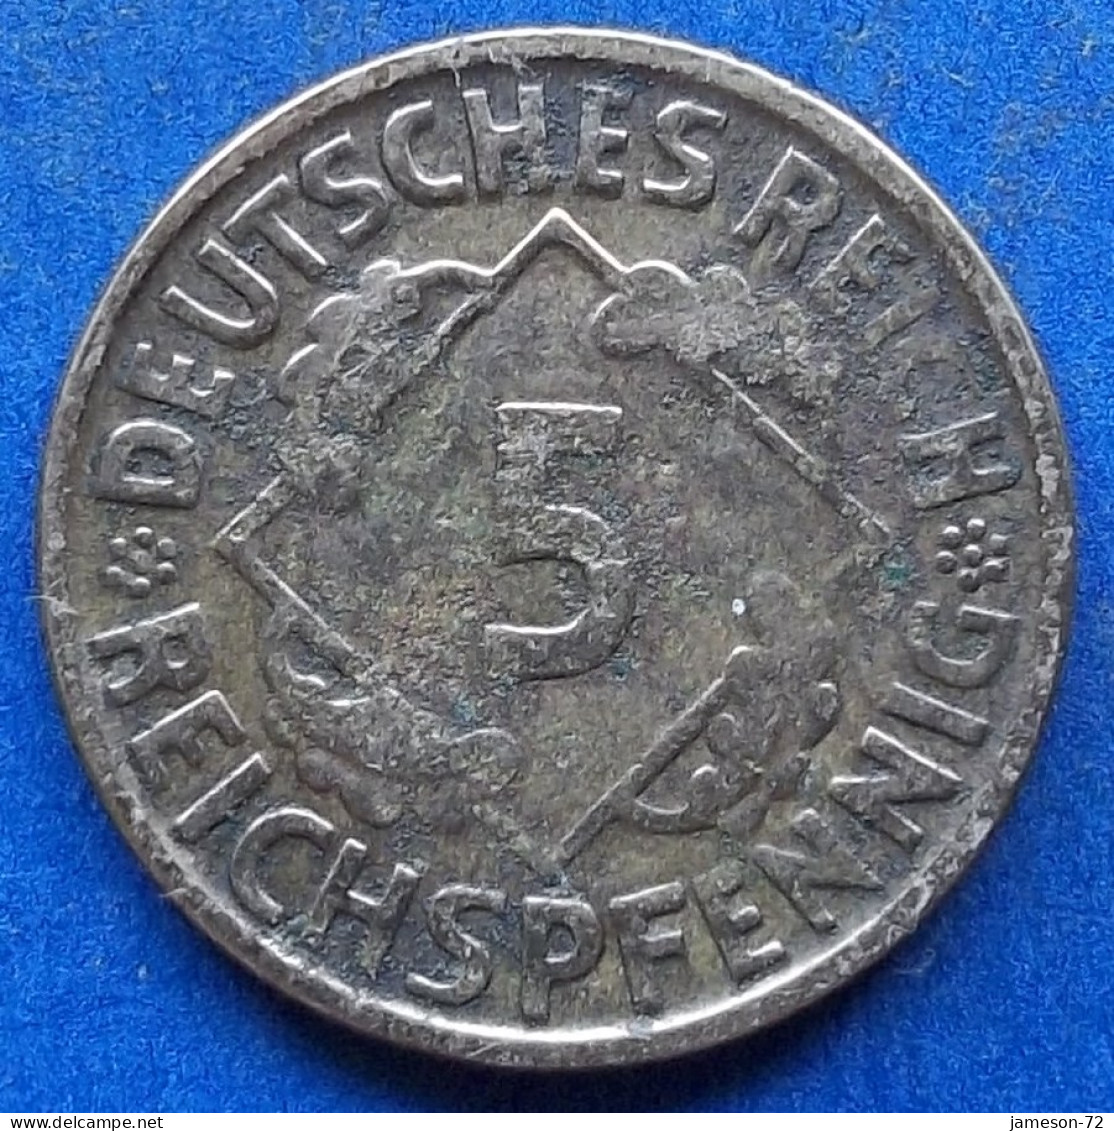 GERMANY - 5 Reichspfennig 1925 D KM# 39 Weimar Republic Reichsmark Coinage (1924-1938) - Edelweiss Coins - 5 Rentenpfennig & 5 Reichspfennig